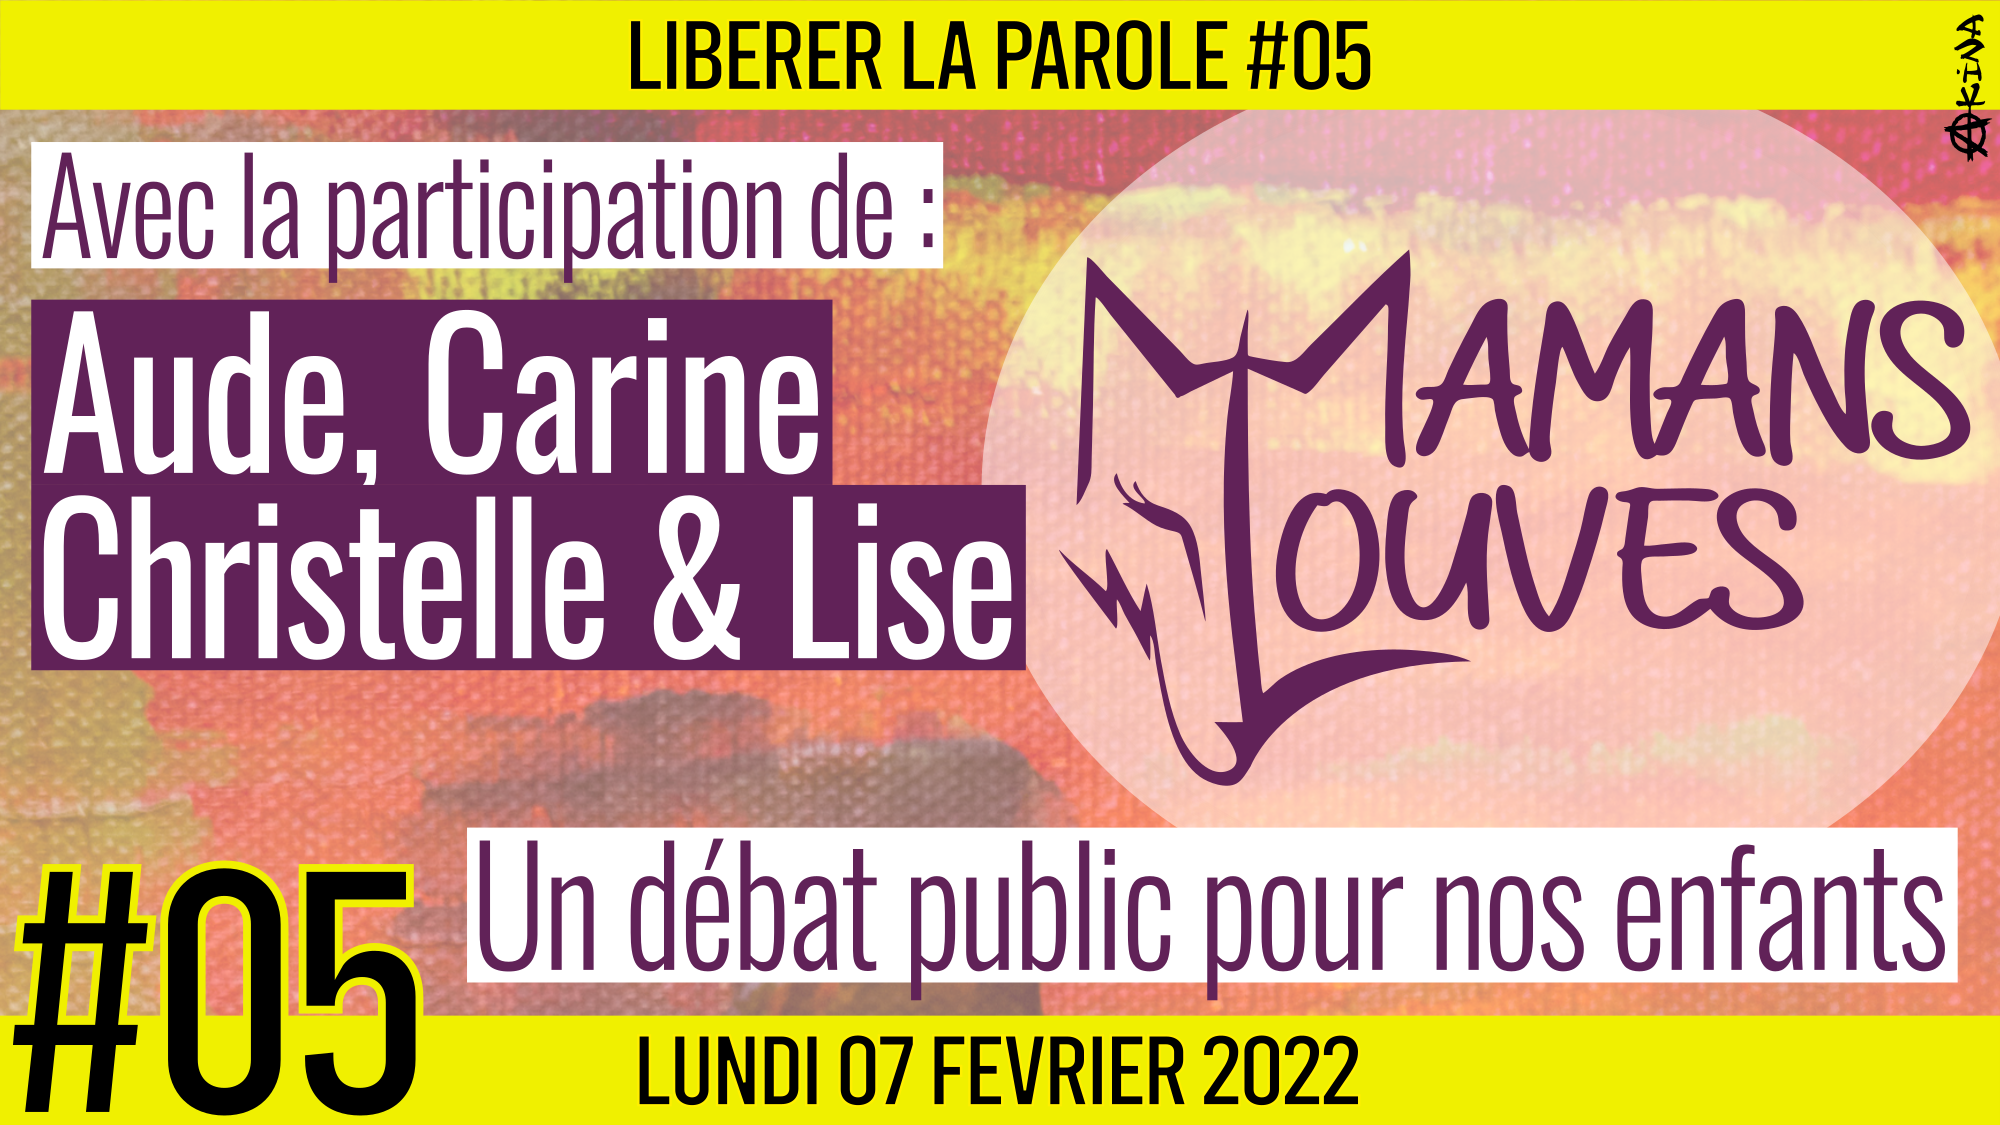 👄 LIBÉRER LA PAROLE #5 🎯 Les Mamans Louves 🗣 Aude, Carine, Christelle & Lise 📆 07-02-2022